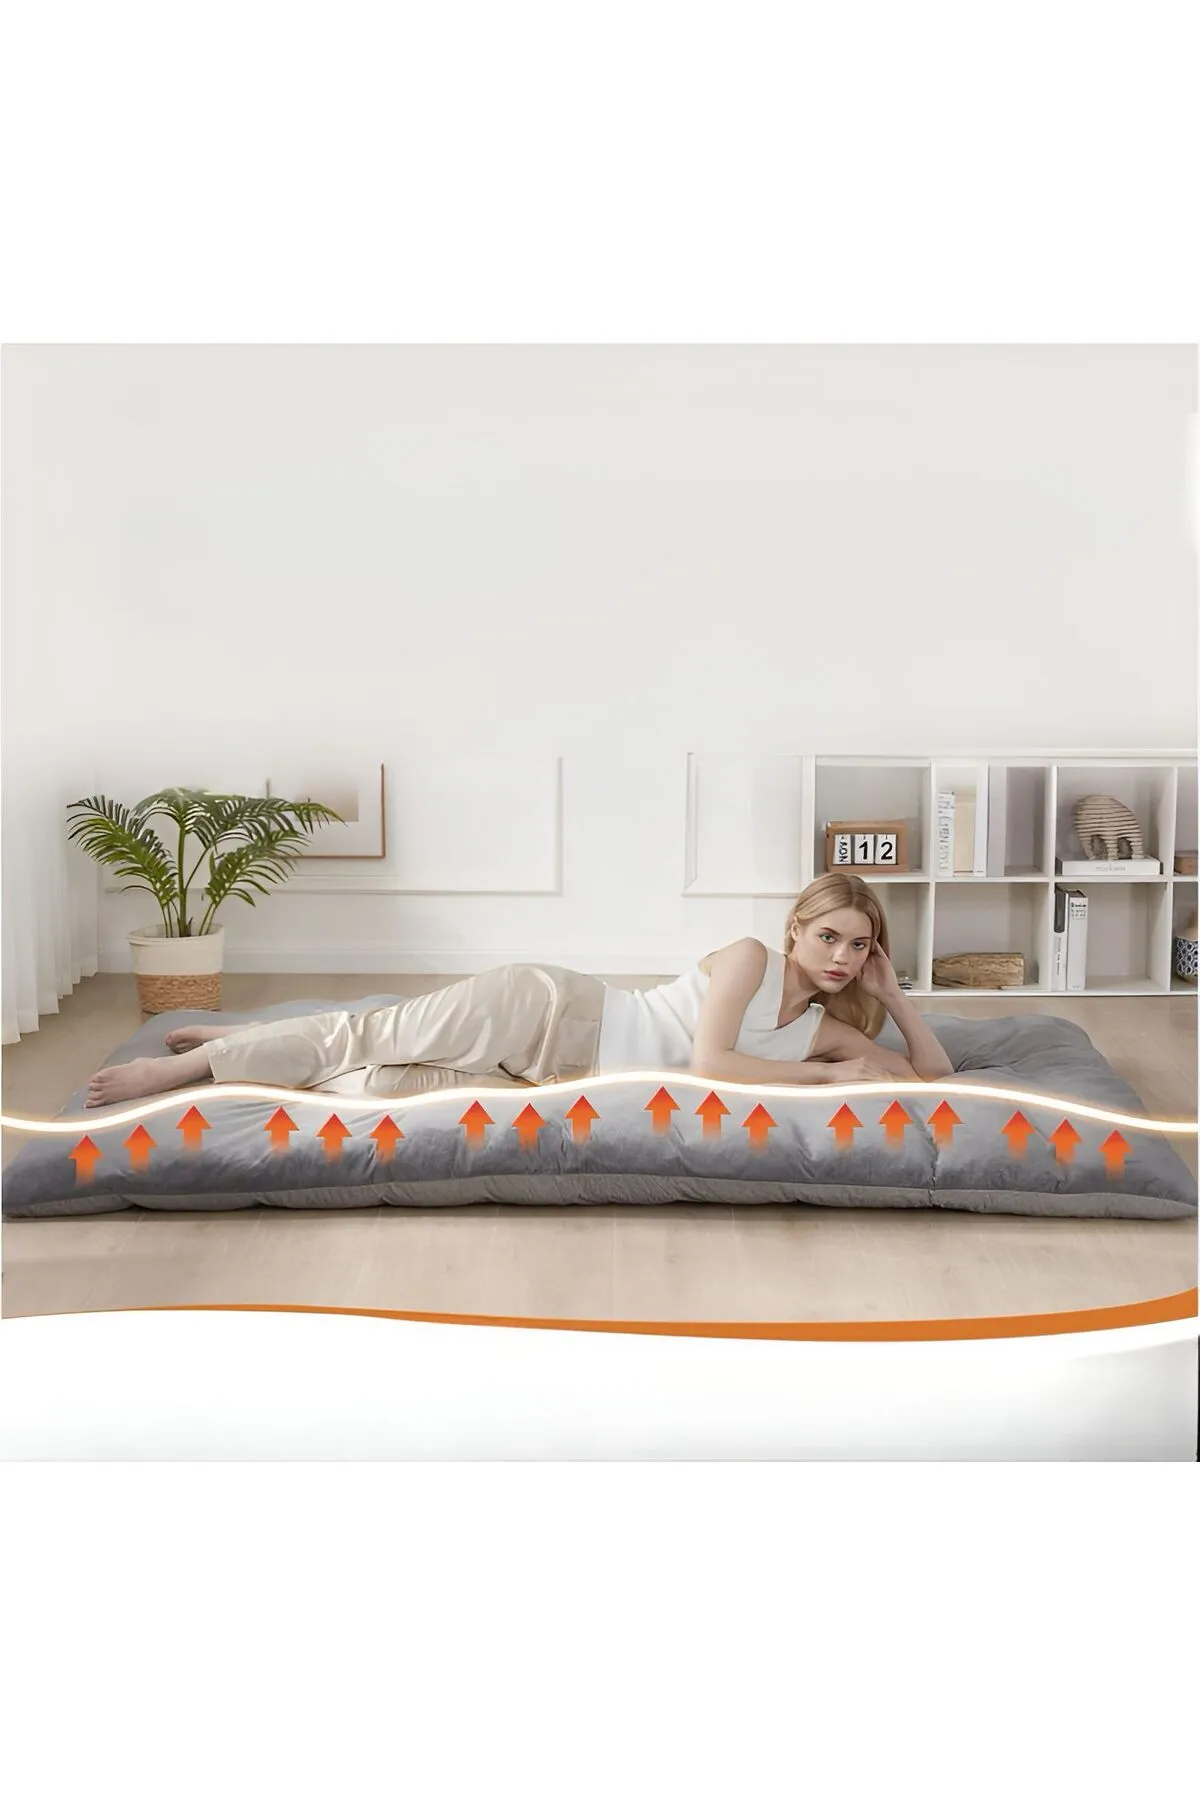 Lori Model Yer Yatağı & Misafir Yatağı & Yıkanabilir Kılıf Fermuarlı